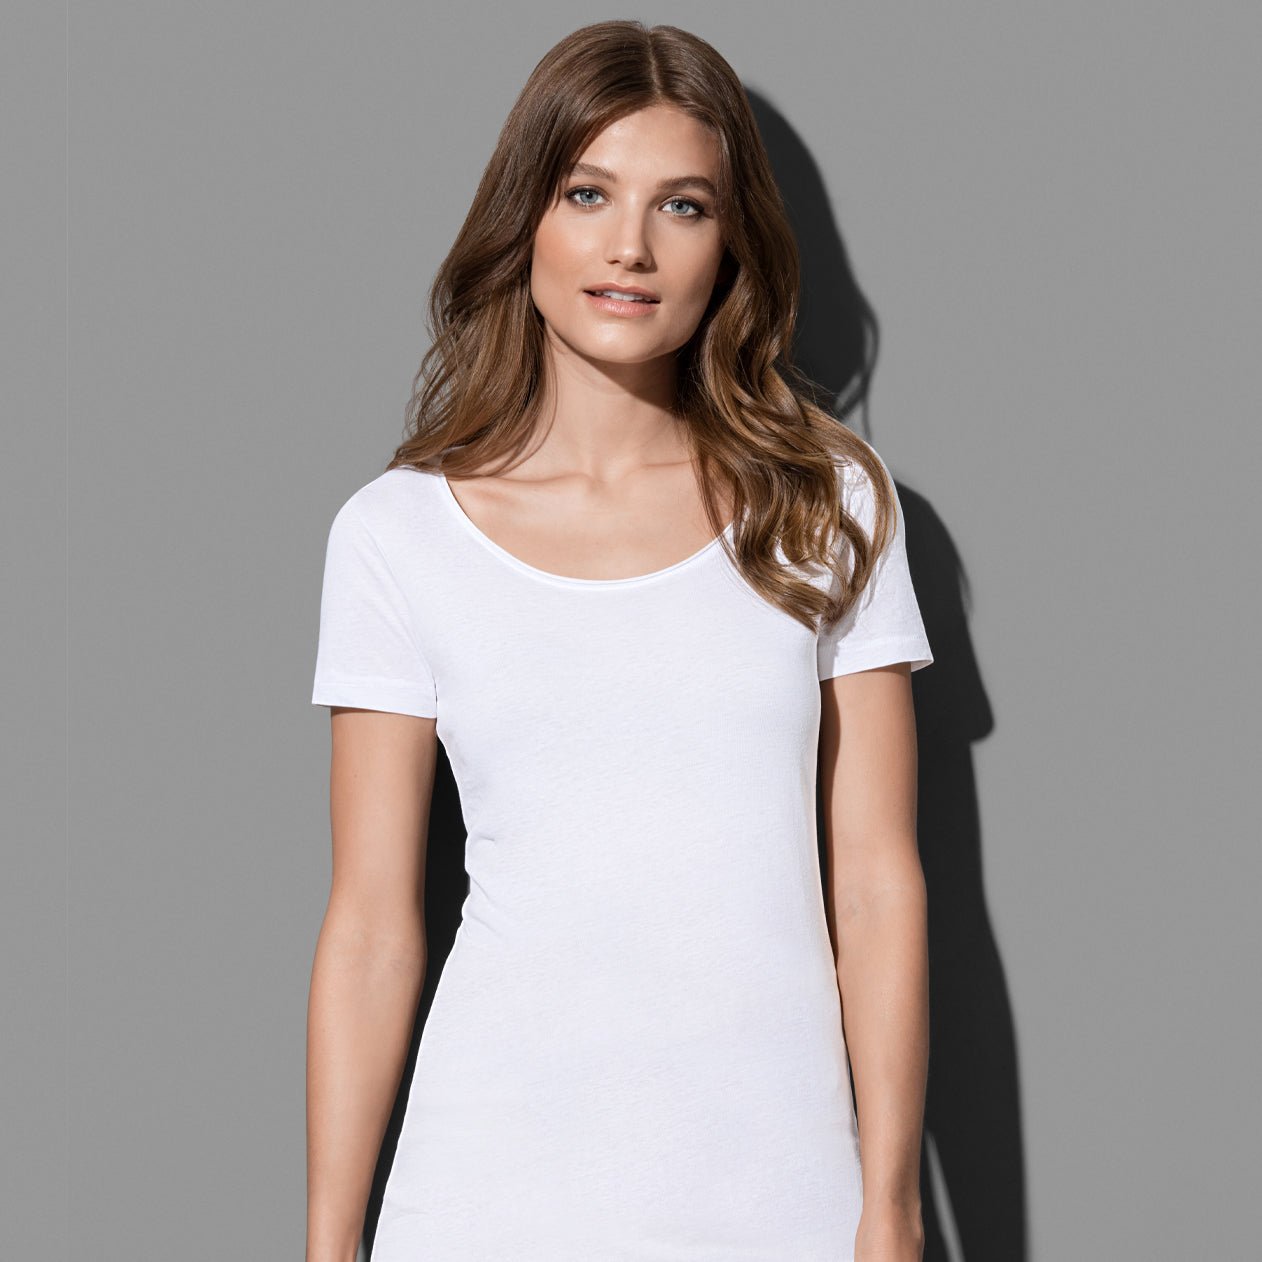 Women's Finest Cotton-T - kustomteamwear.com